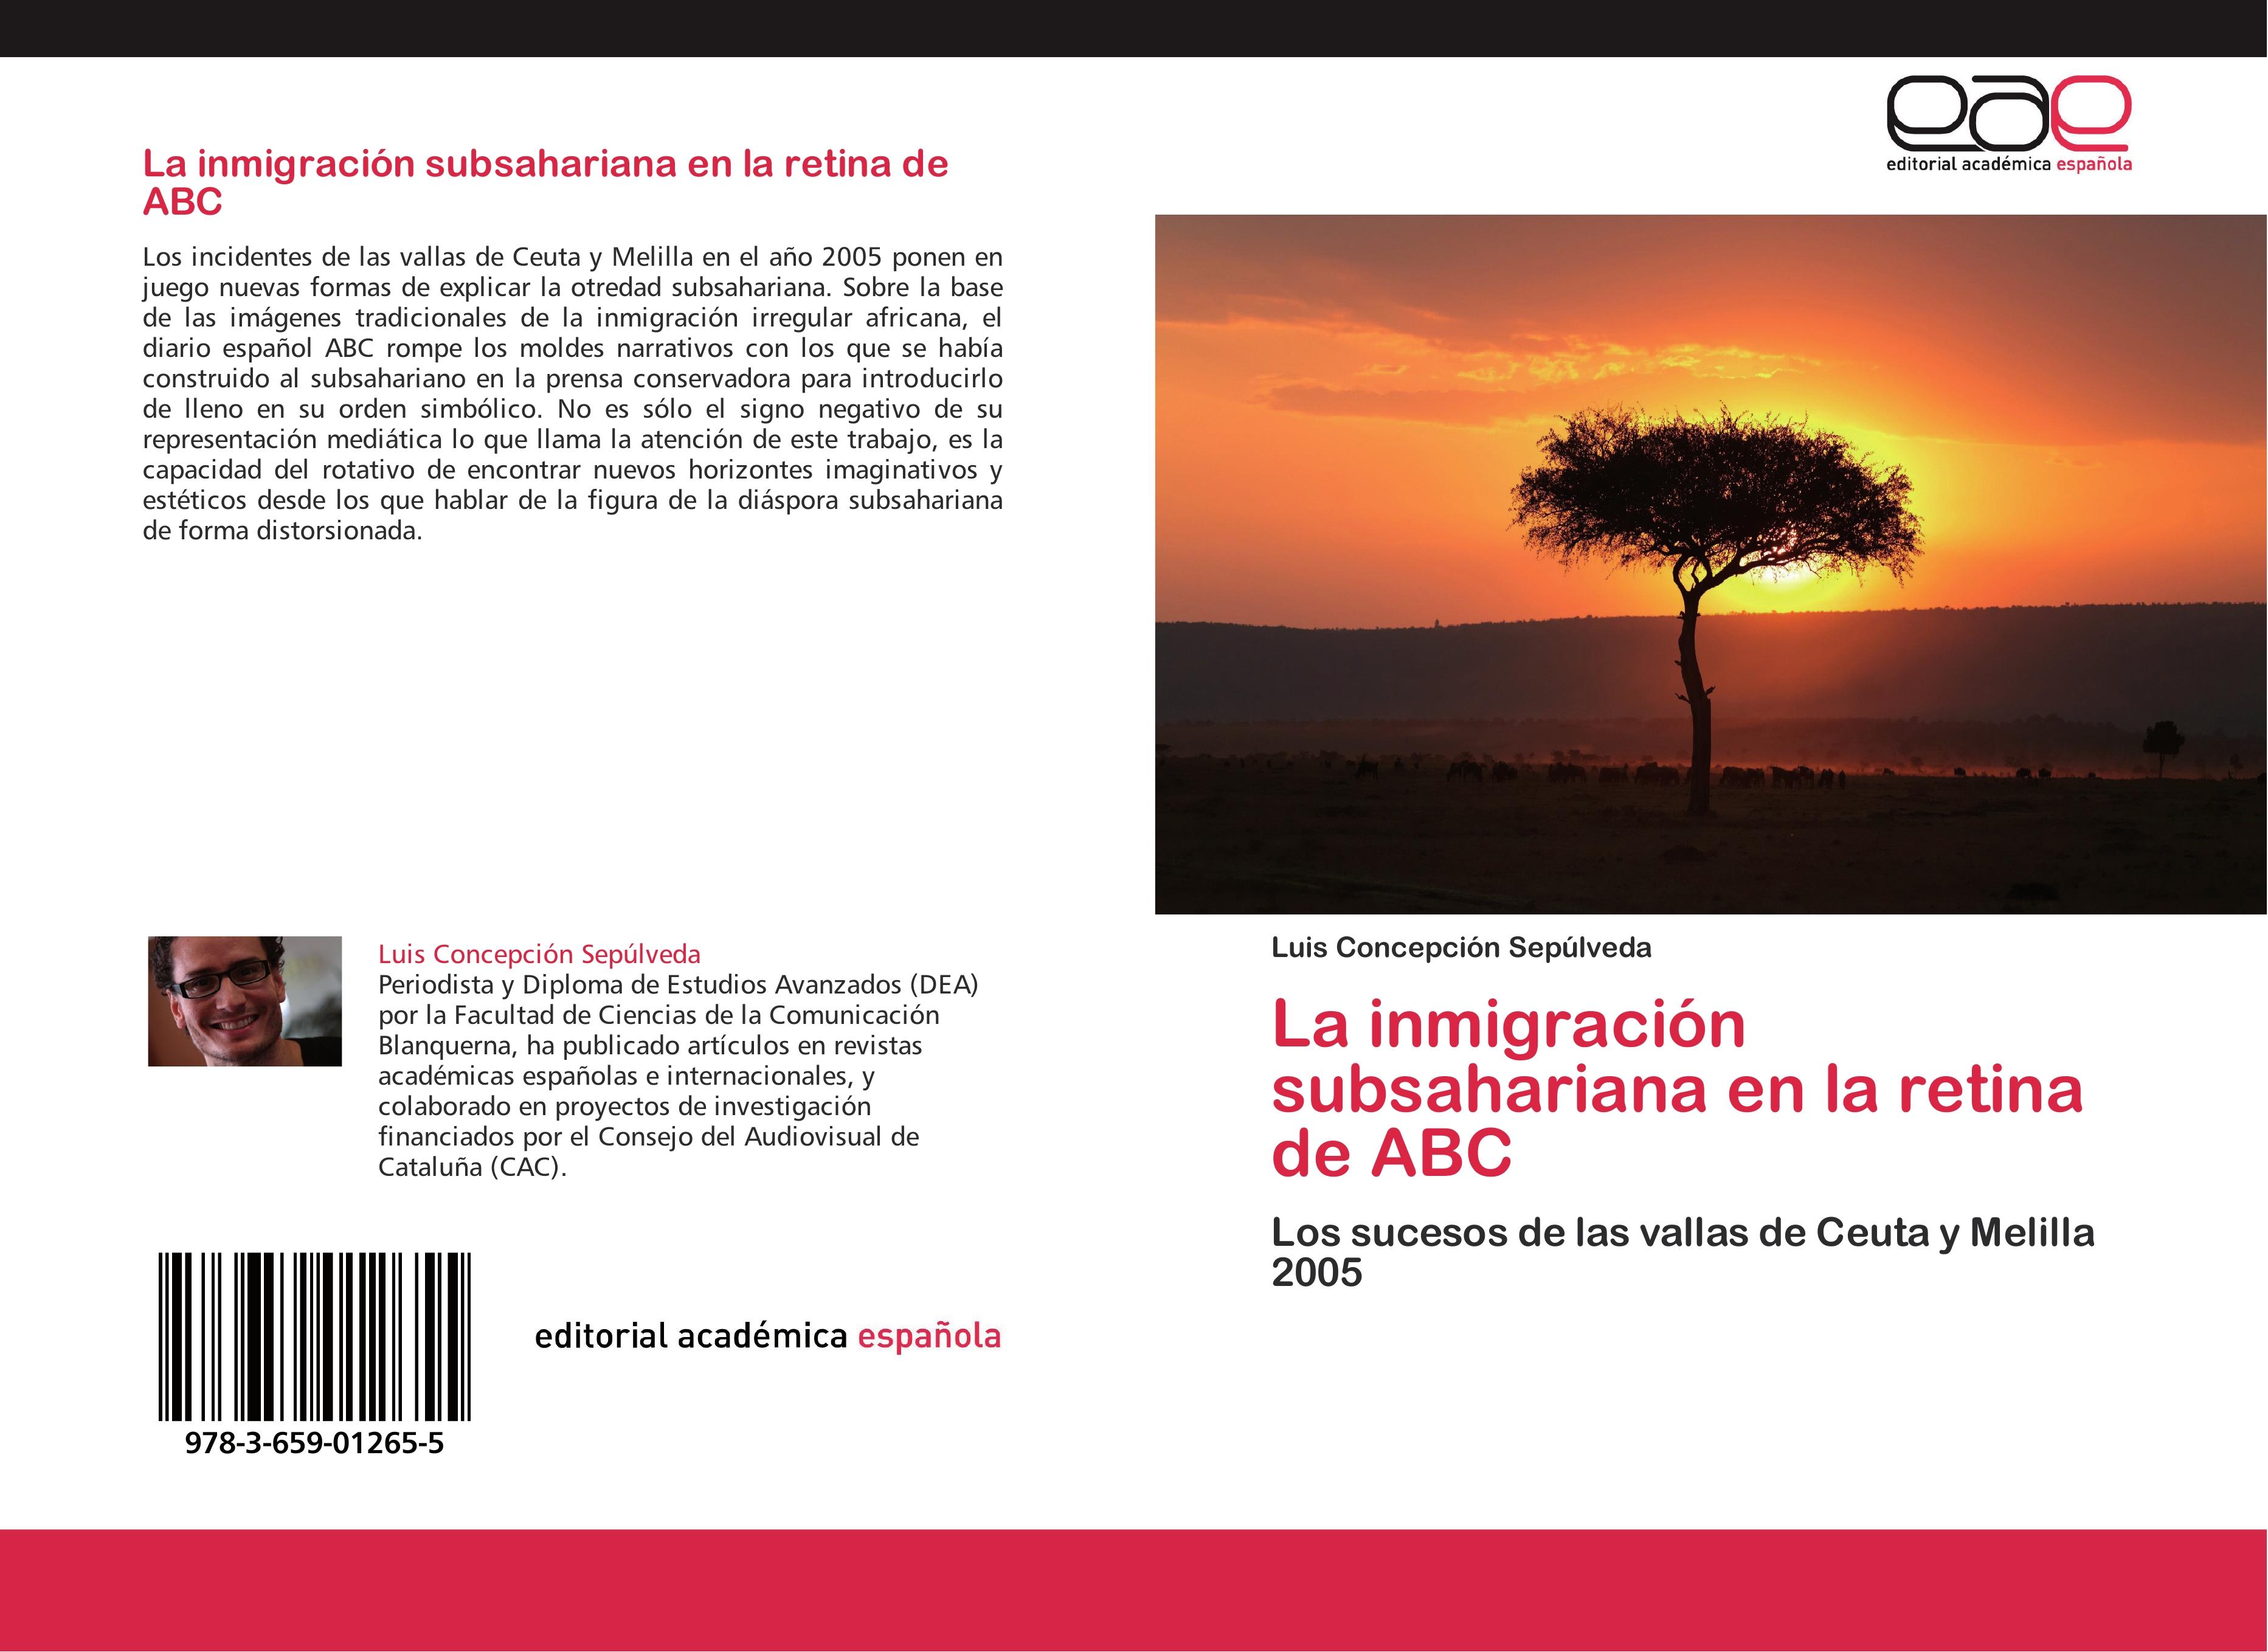 La inmigración subsahariana en la retina de ABC - Luis Concepción Sepúlveda